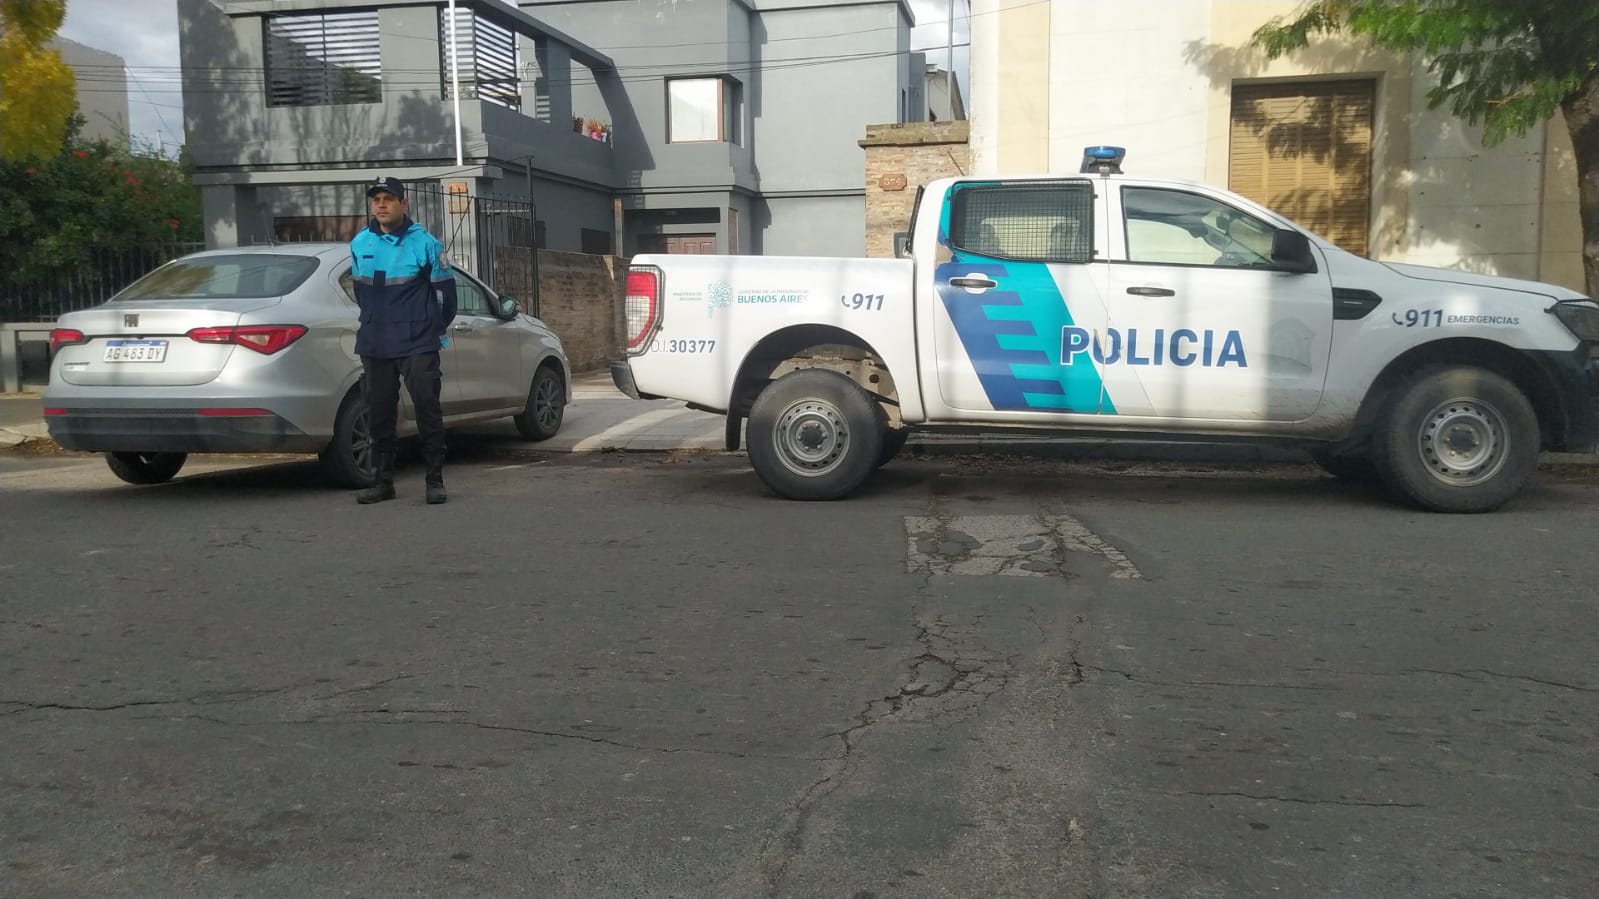 La Policía de Tres Arroyos continúa con los controles y operativos de seguridad: un vehículo recuperado